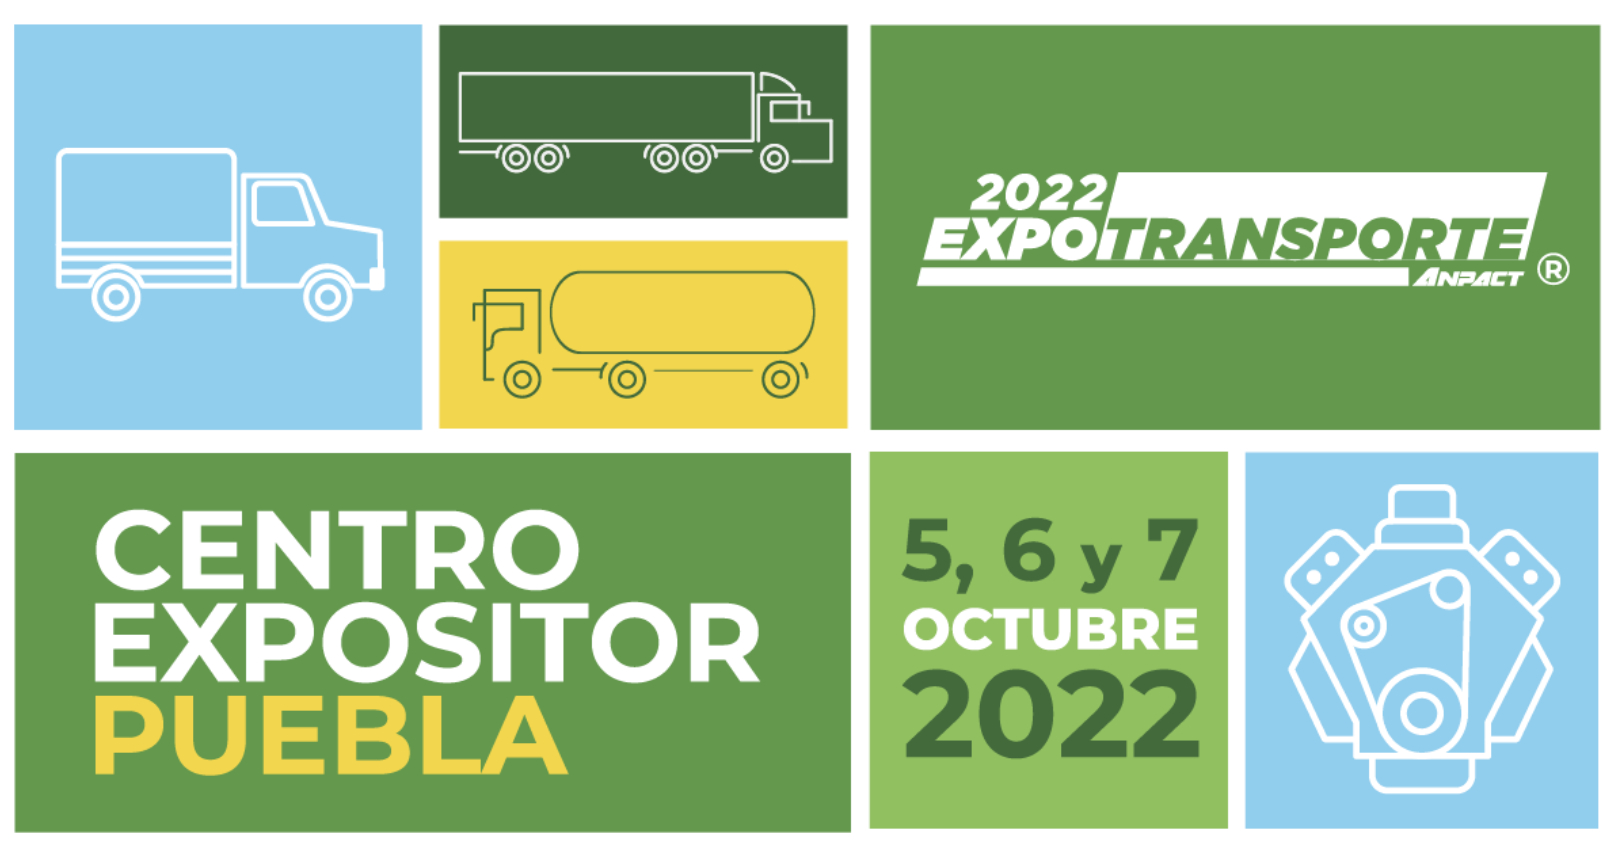  Expo Transporte ANPACT 2022